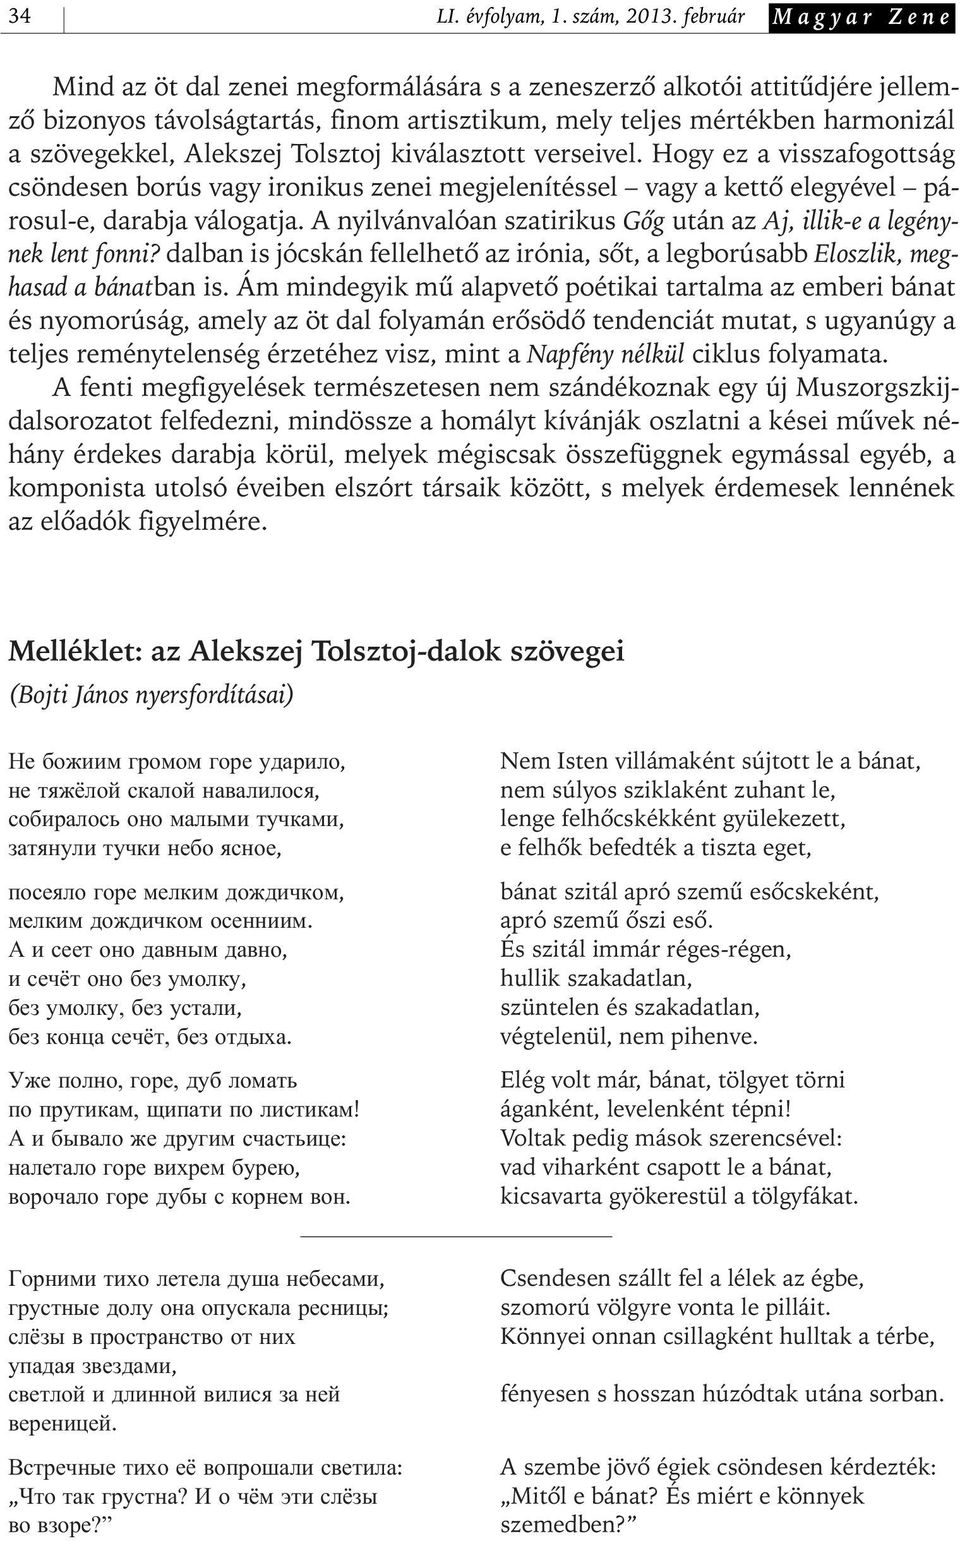 Alekszej Tolsztoj kiválasztott verseivel. Hogy ez a visszafogottság csöndesen borús vagy ironikus zenei megjelenítéssel vagy a kettô elegyével párosul- e, darabja válogatja.